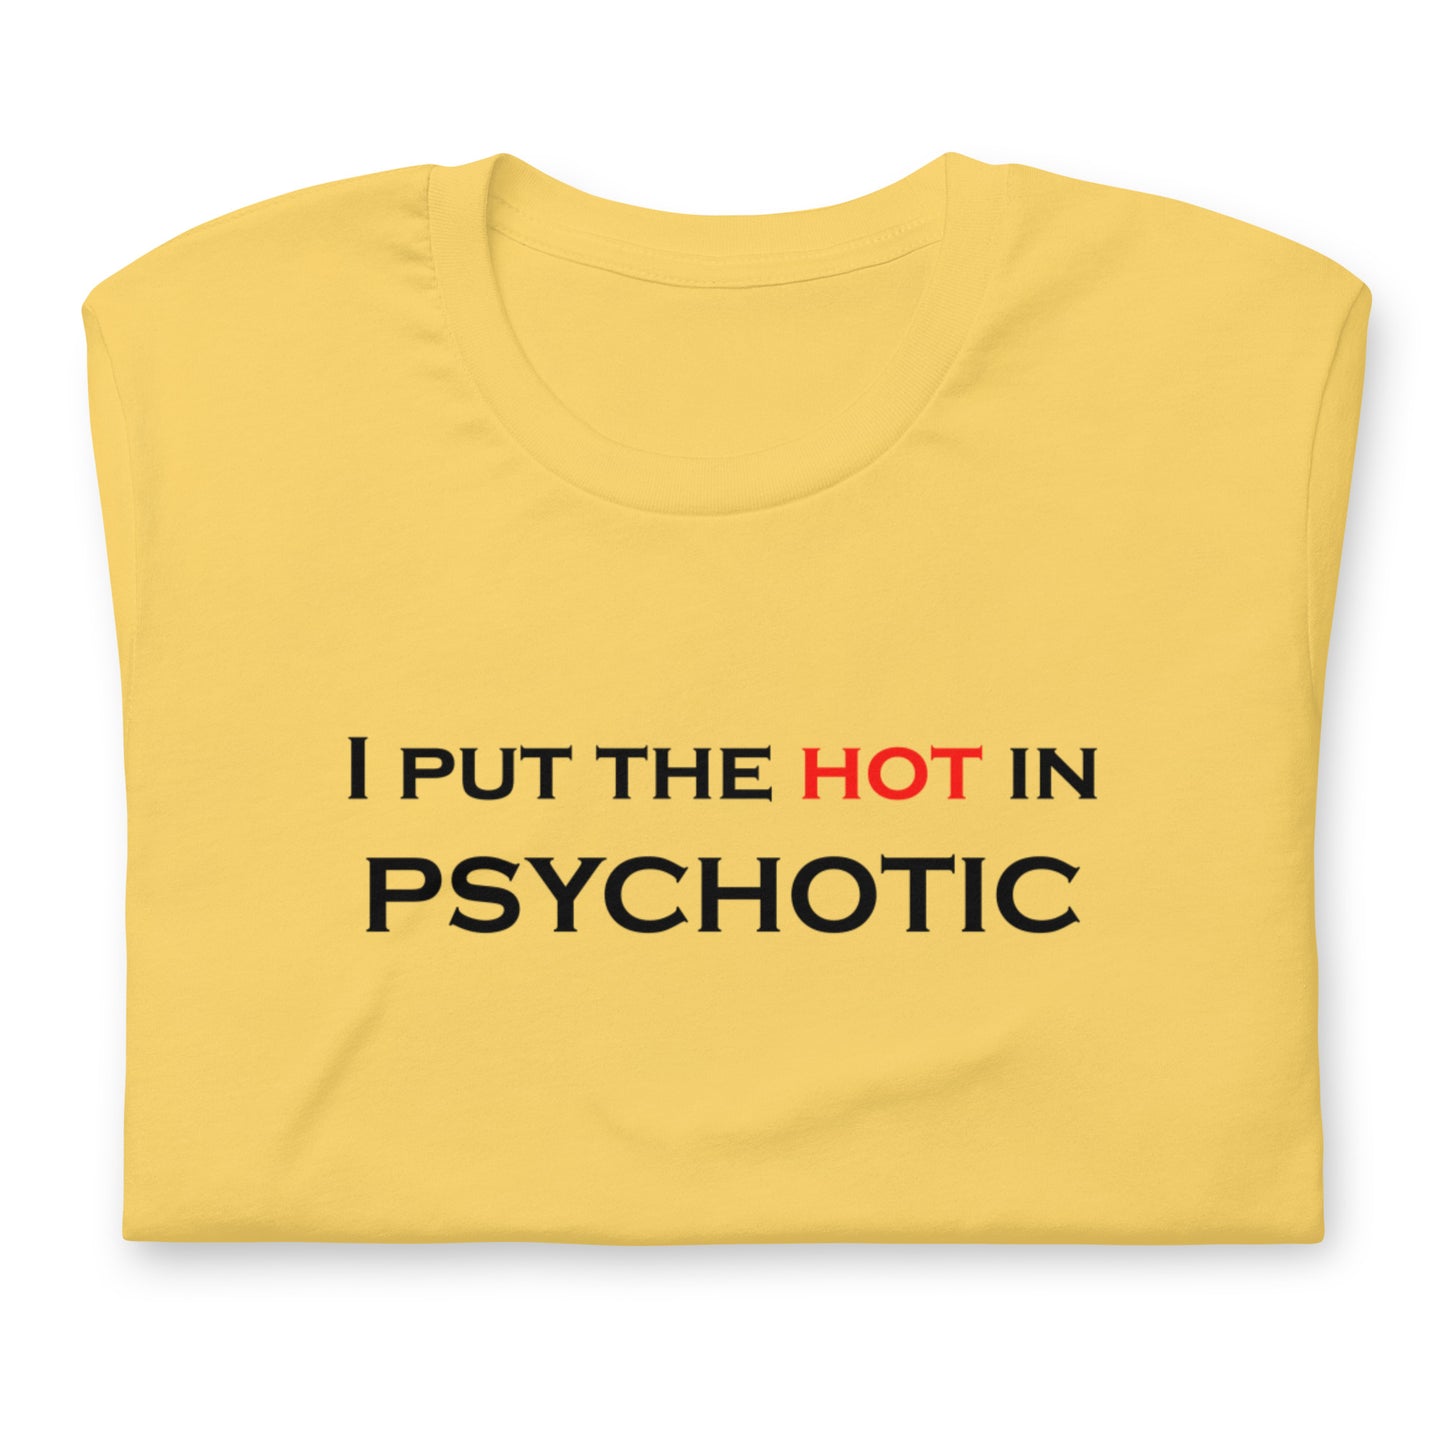 Hot in Psychotic